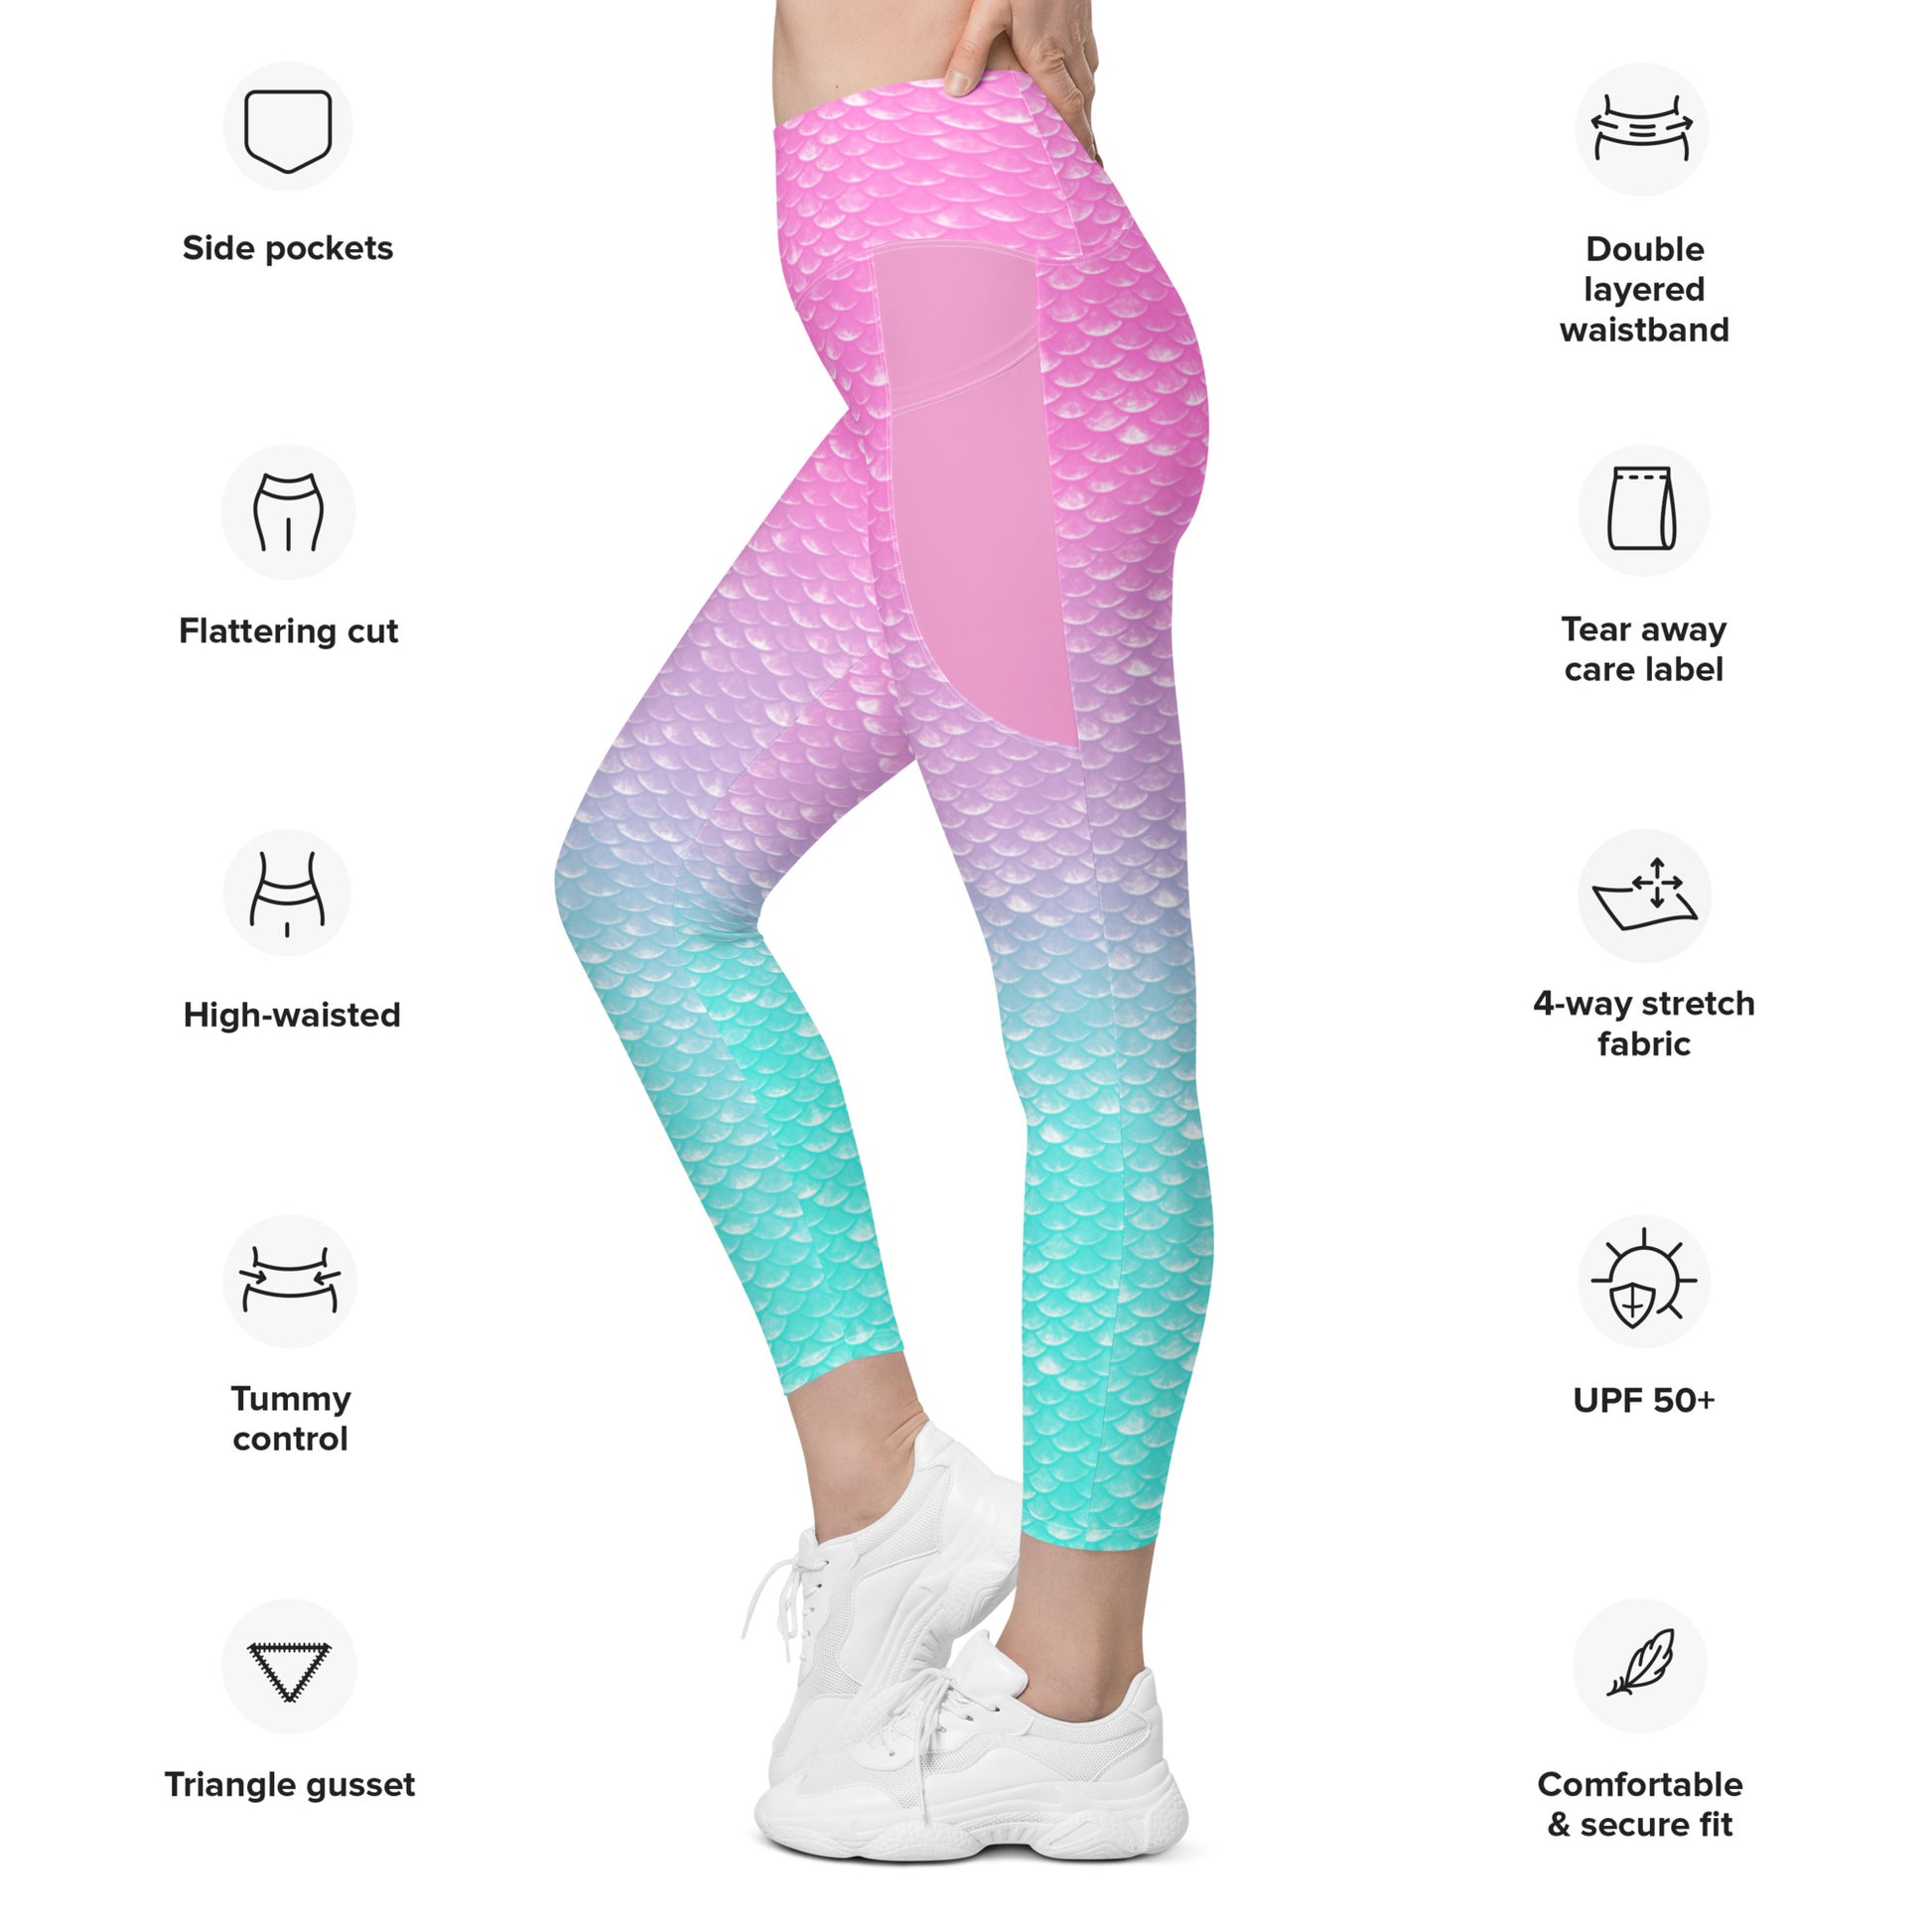 Rainbow Fish Yoga Leggings -   Yoga leggings, Leggings, Comfortable  yoga